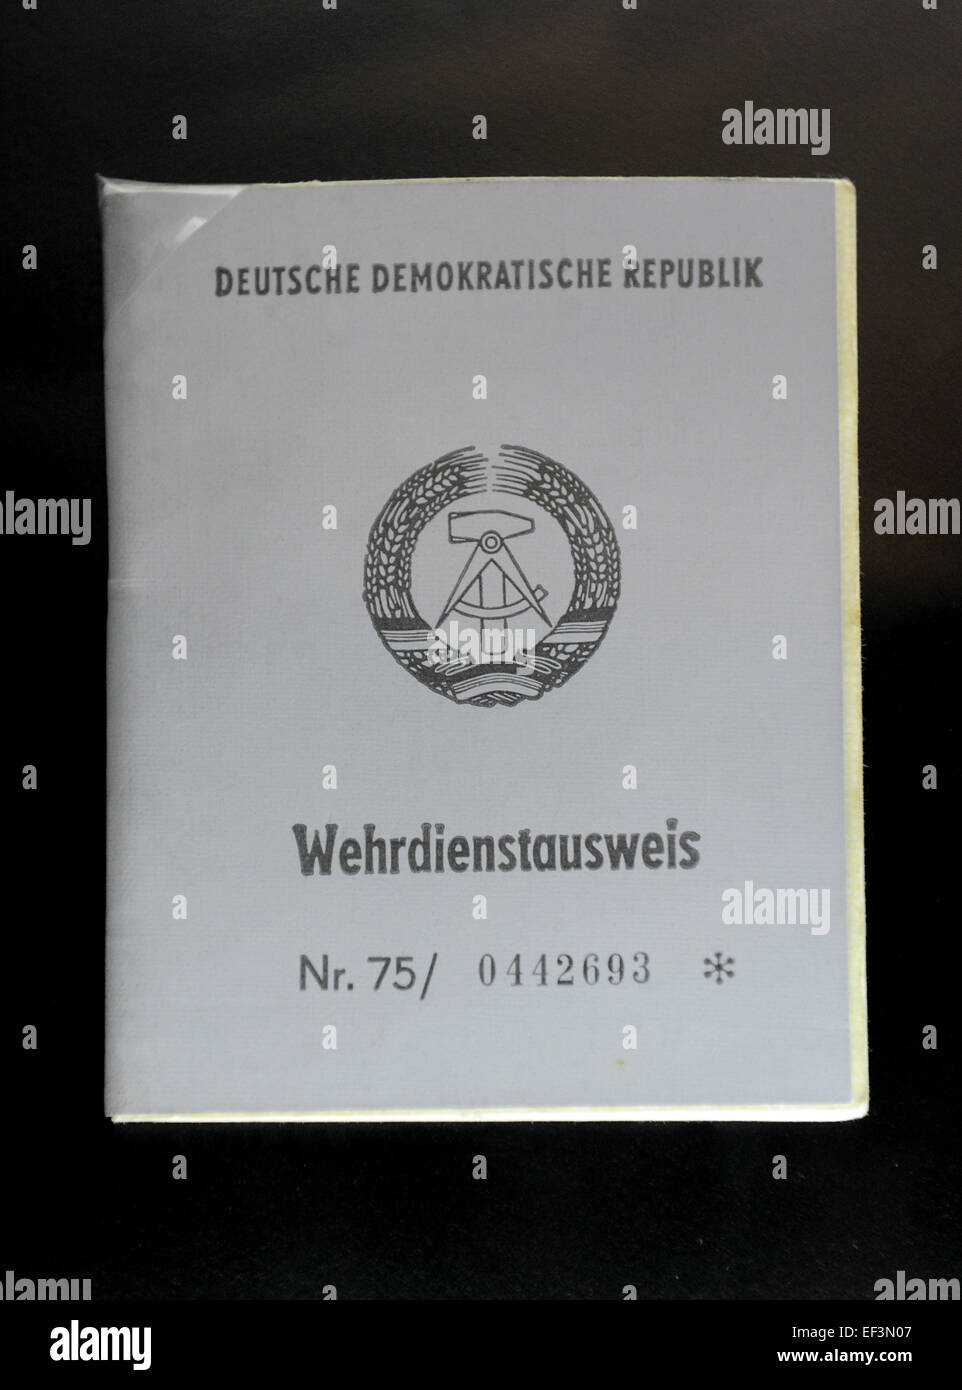 L'Allemagne de l'Est (RDA). Certificat de service militaire. 60. 20e siècle. DDR Museum. Berlin. L'Allemagne. Banque D'Images